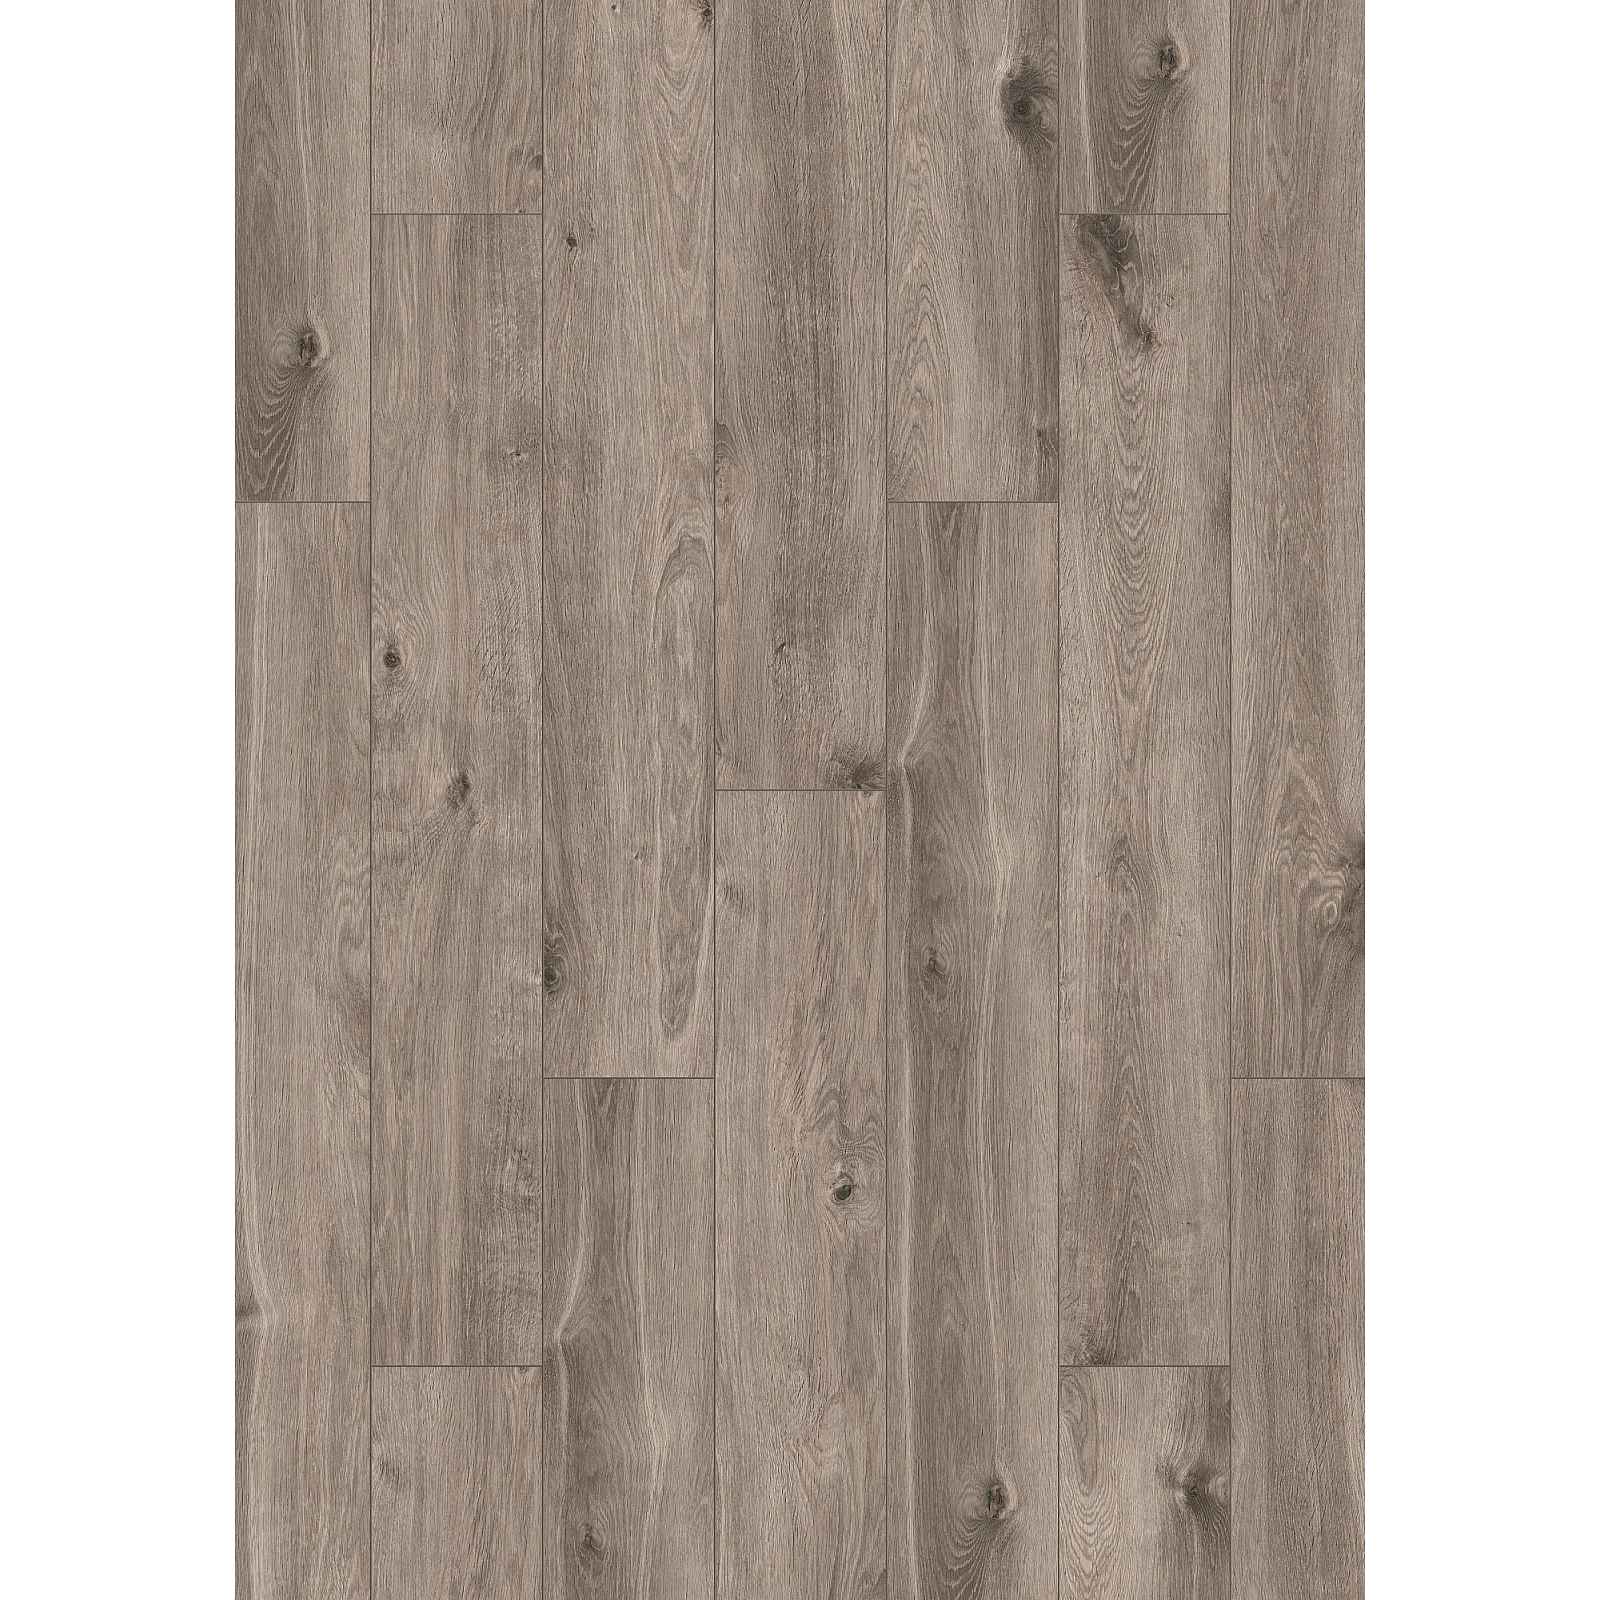 Laminátová podlaha voděodolná H2O Floor 1531 Baltic Oak 8 mm